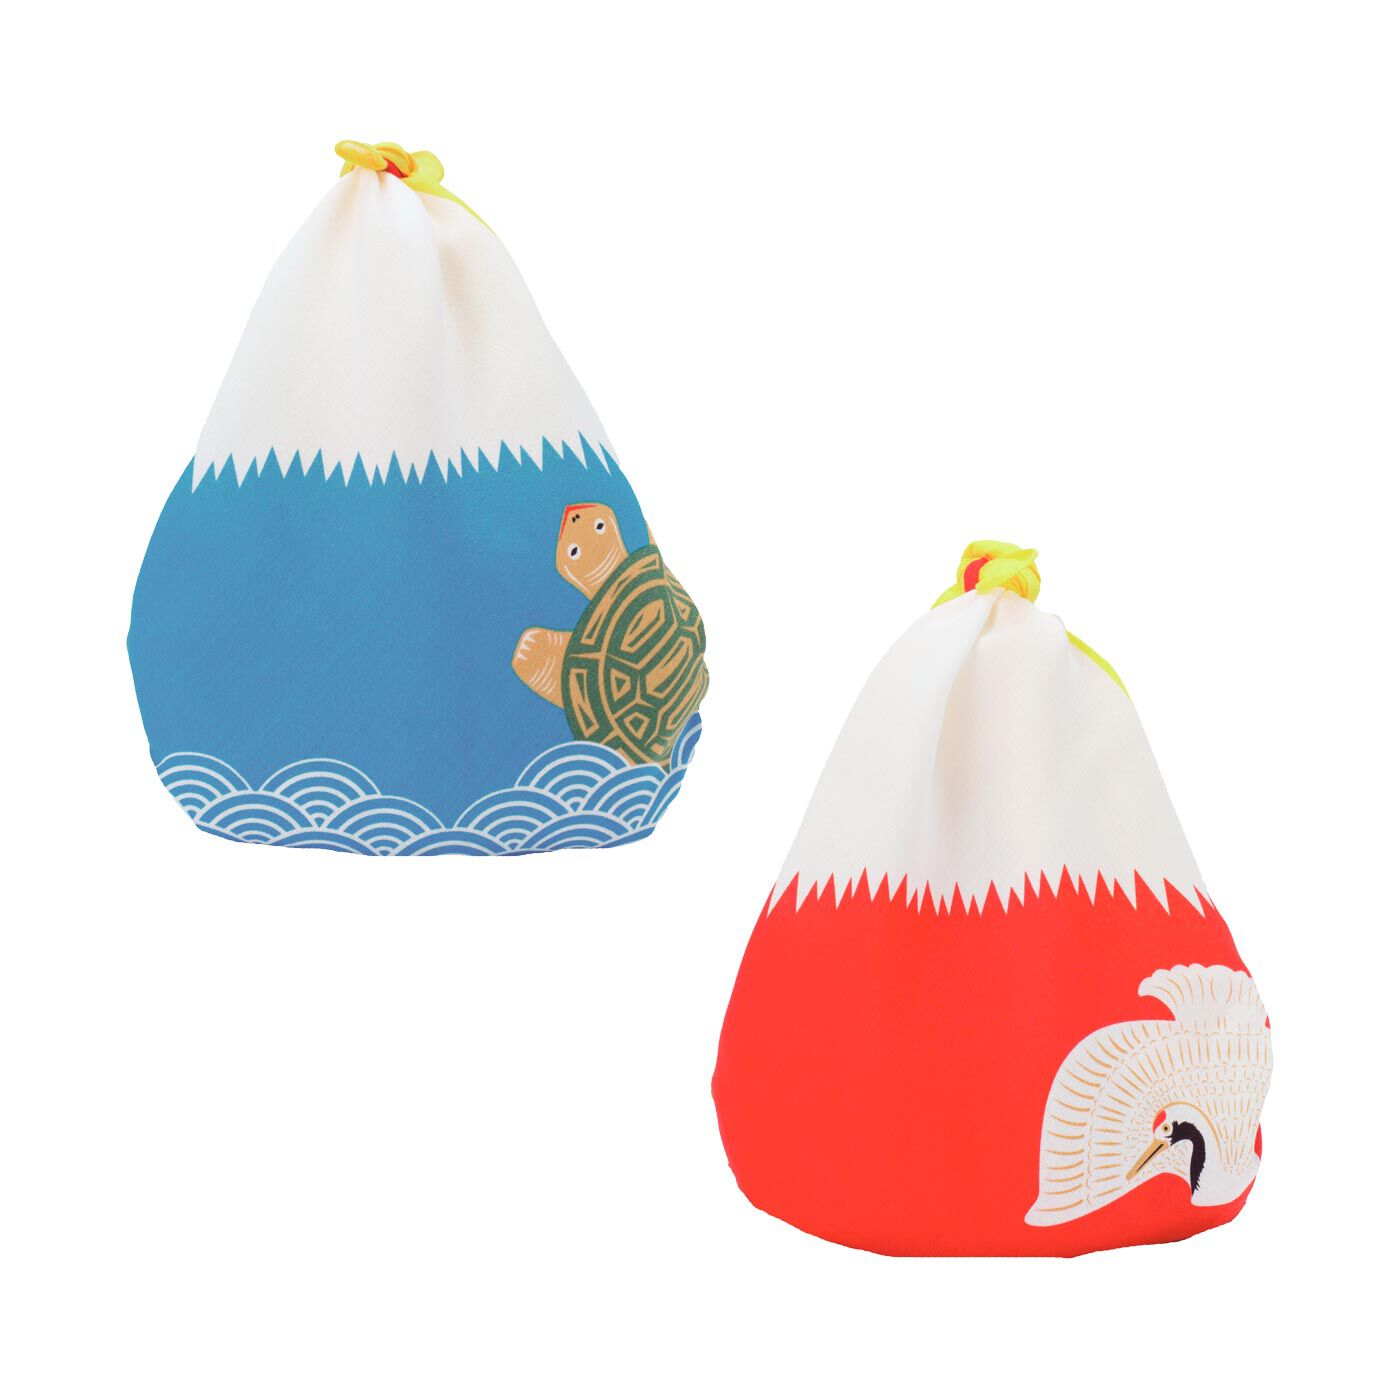 フェリシモの雑貨 Kraso|【福コチャエ】包んで完成する小さな開運風呂敷の会|ちびバッグみたいにして使えます。